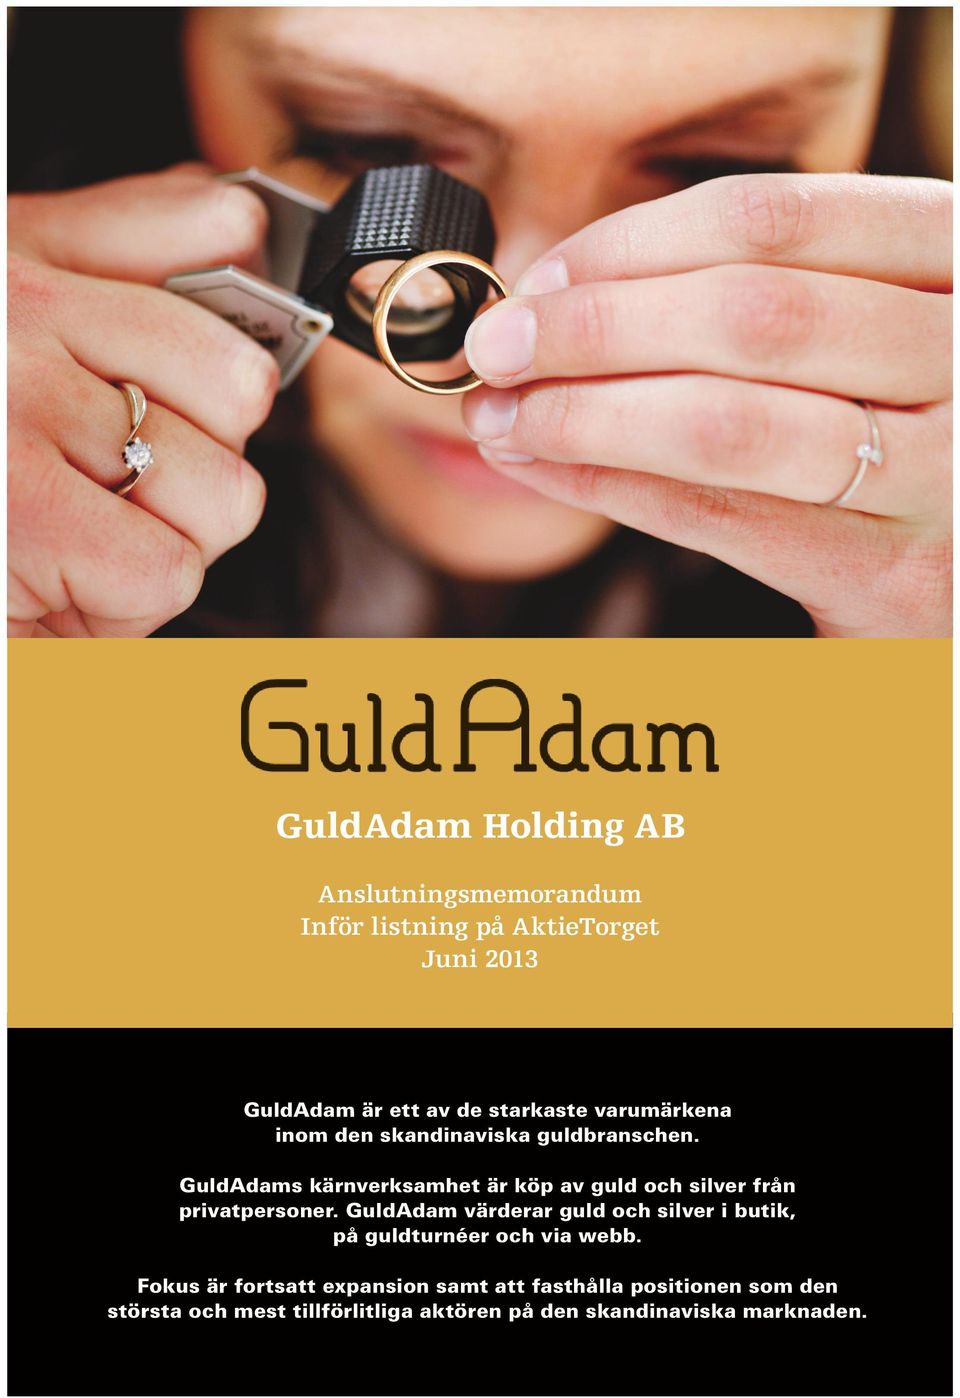 GuldAdams kärnverksamhet är köp av guld och silver från privatpersoner.